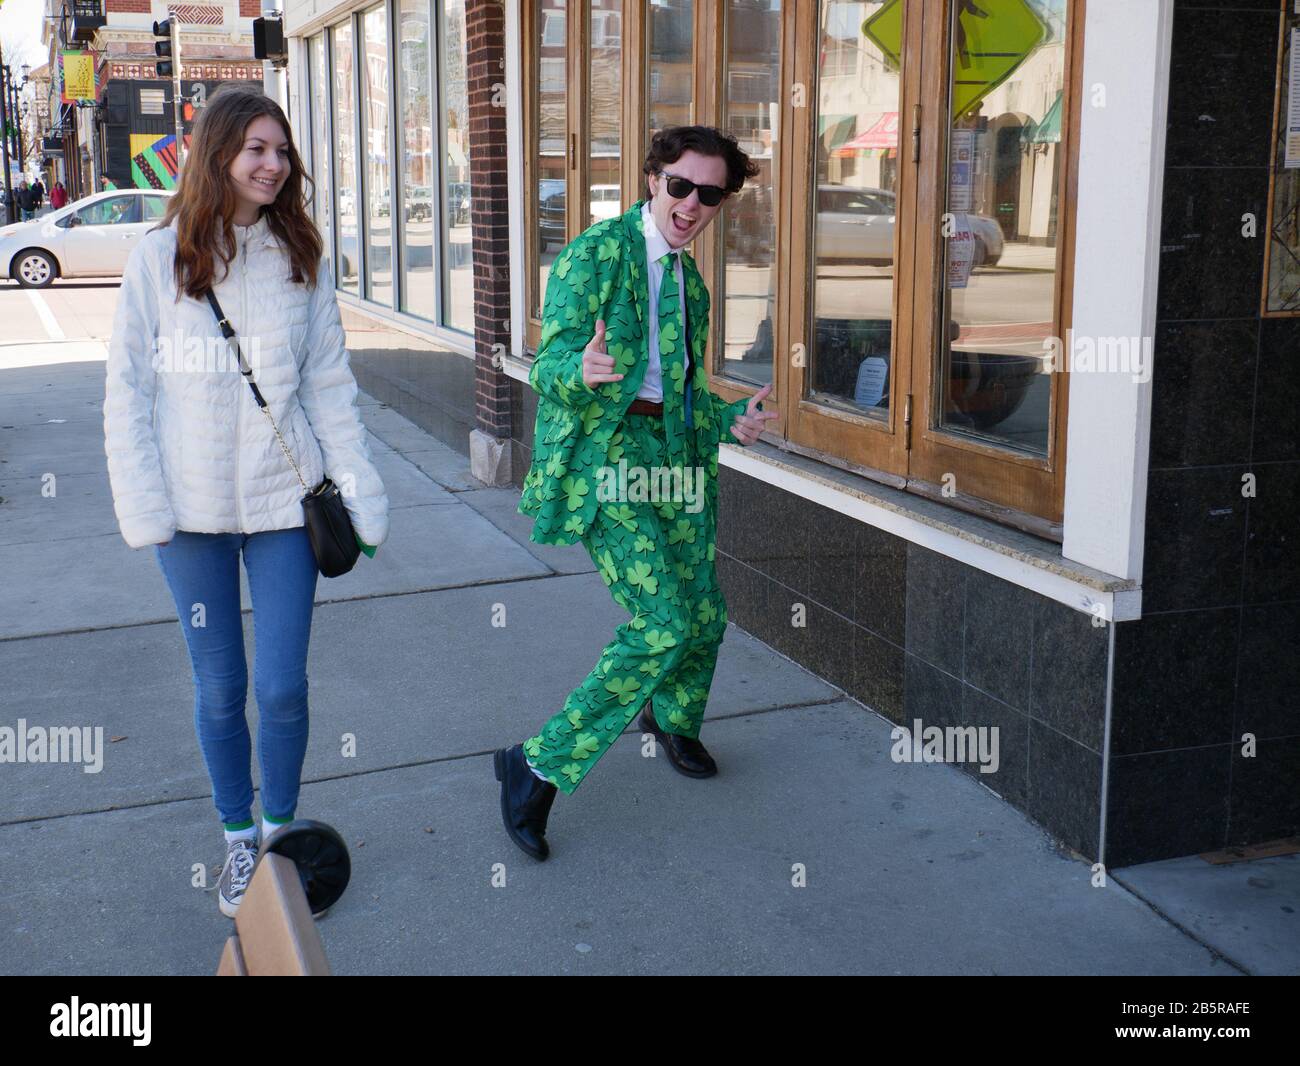 Forest Park, Illinois, États-Unis. 8 mars 2020. Un jeune homme frappe une pose portant un costume shamrock vert pour la Saint Patrick. Banque D'Images